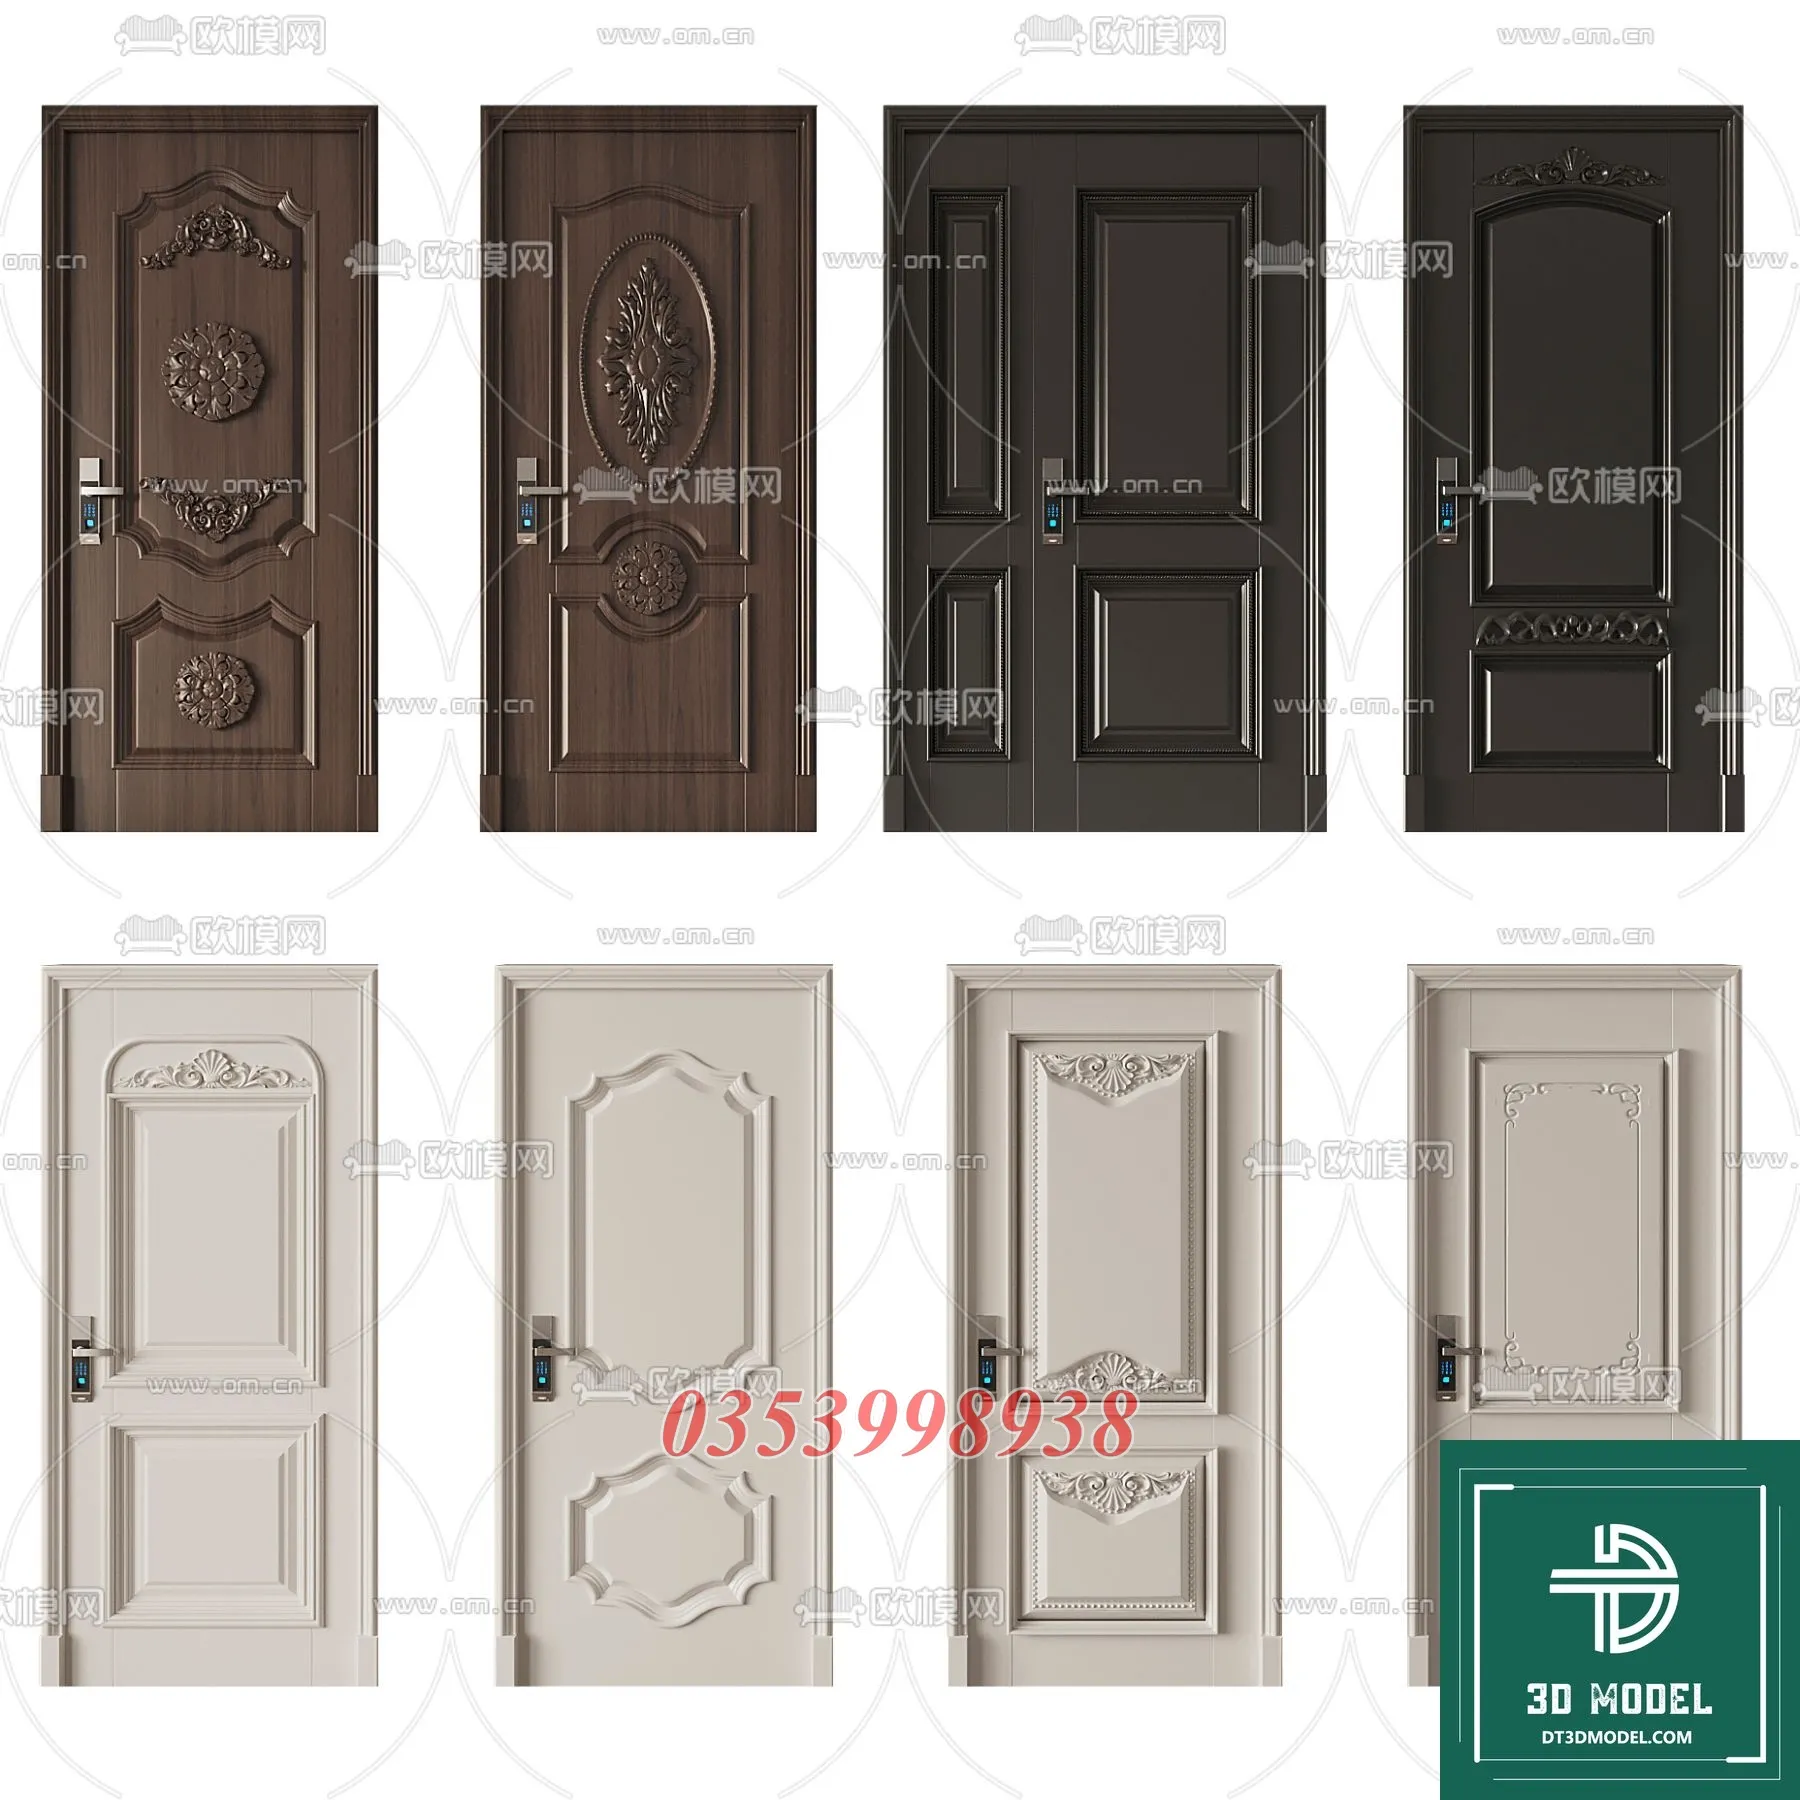 CLASSIC DOOR – 3dsmax MODELS – 087